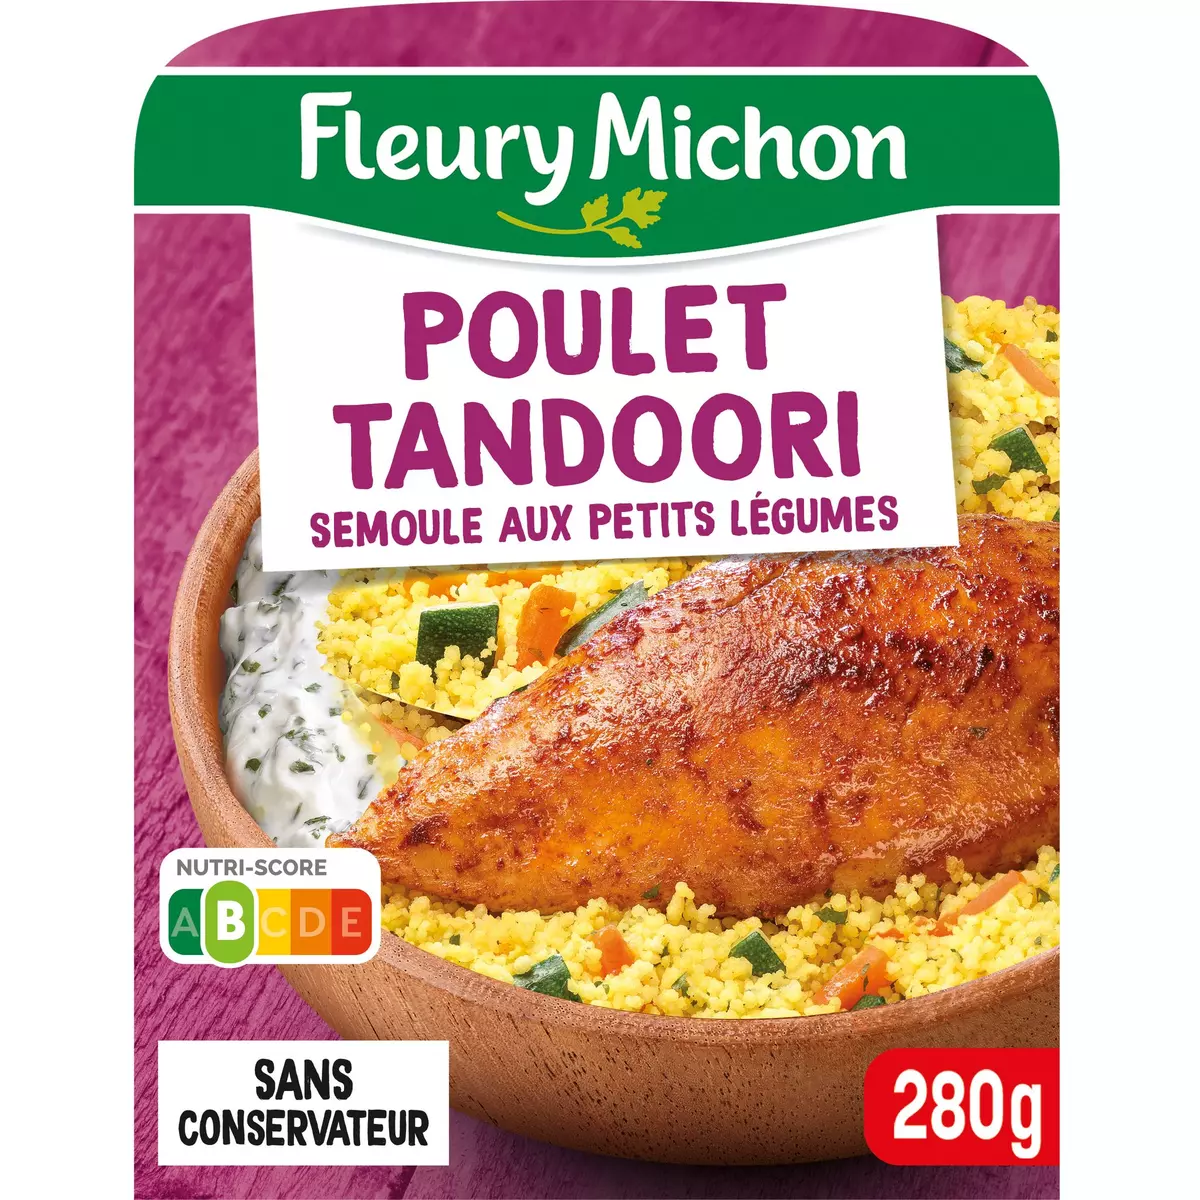 FLEURY MICHON Poulet tandoori, semoule aux petits légumes 1 portion 280g